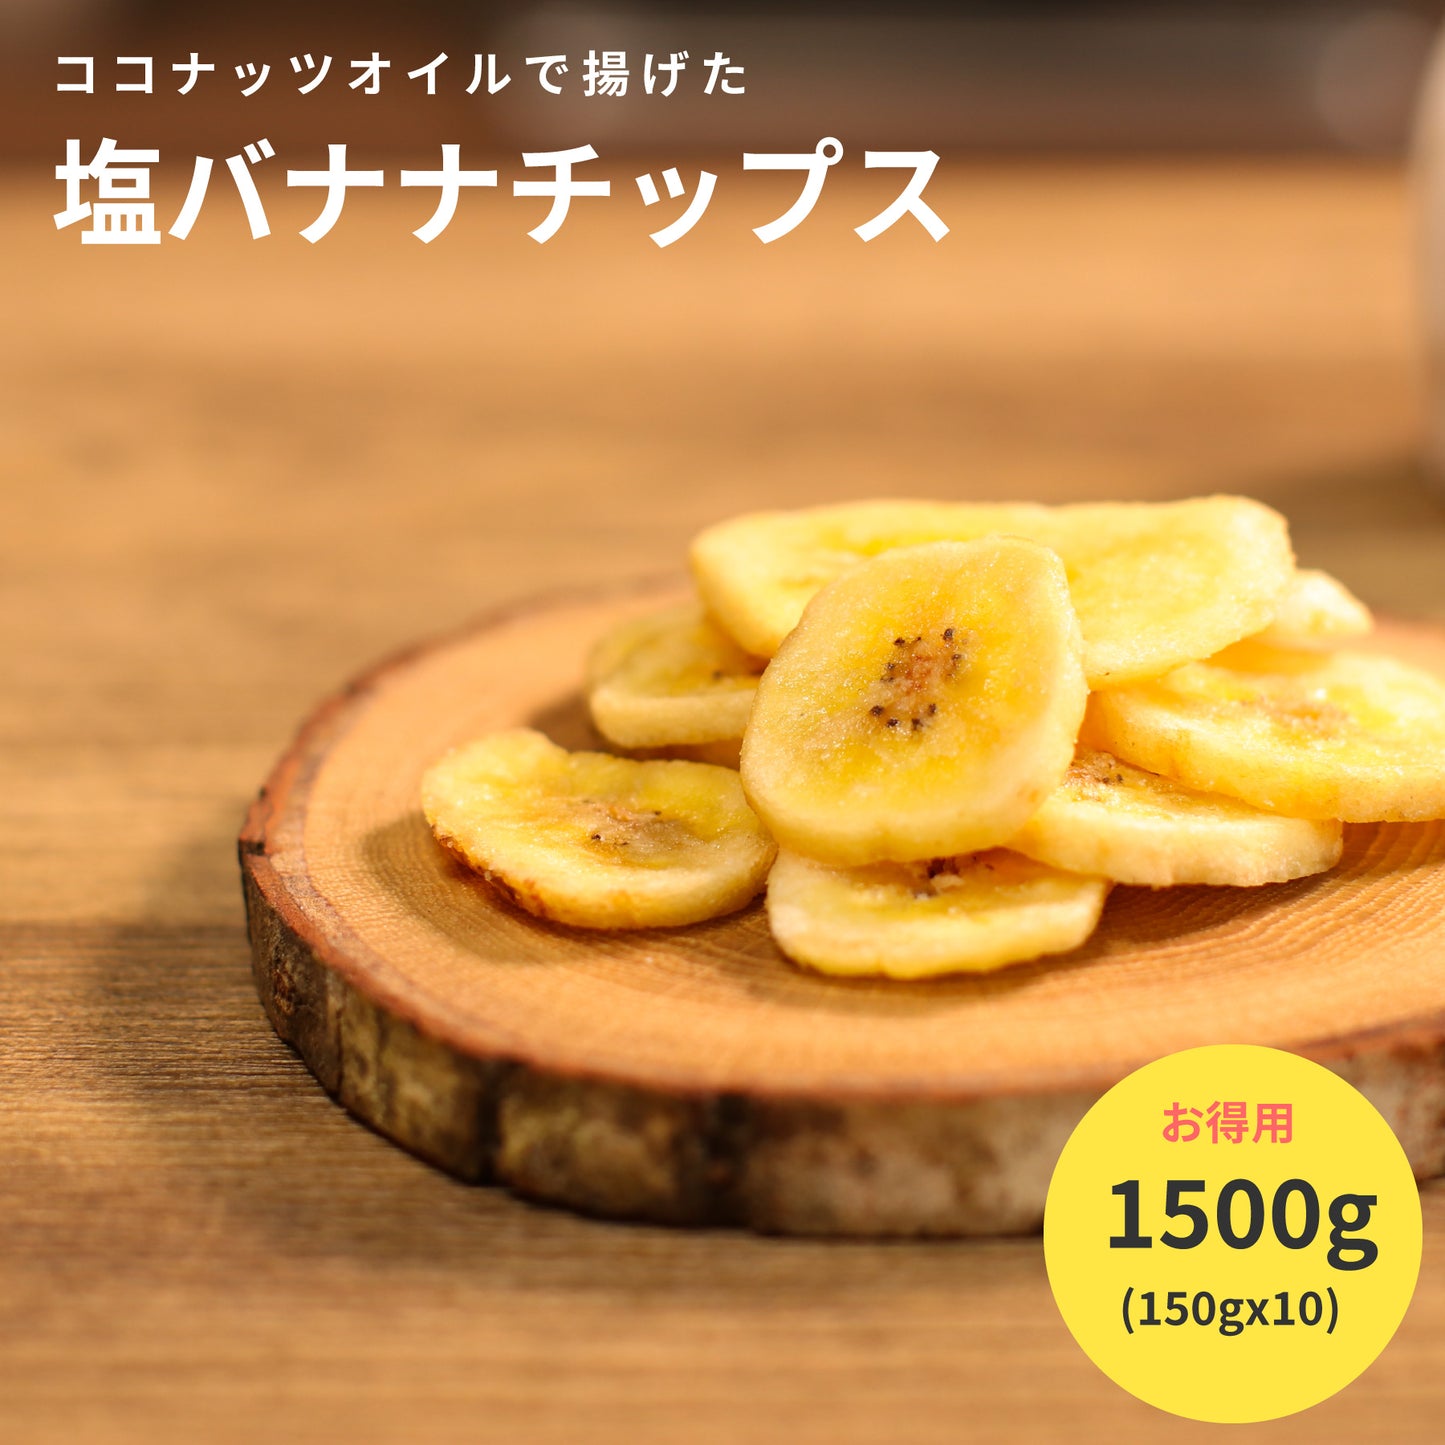 塩バナナチップス 150gx10 鹿児島錦江湾の塩 ココナッツオイル使用